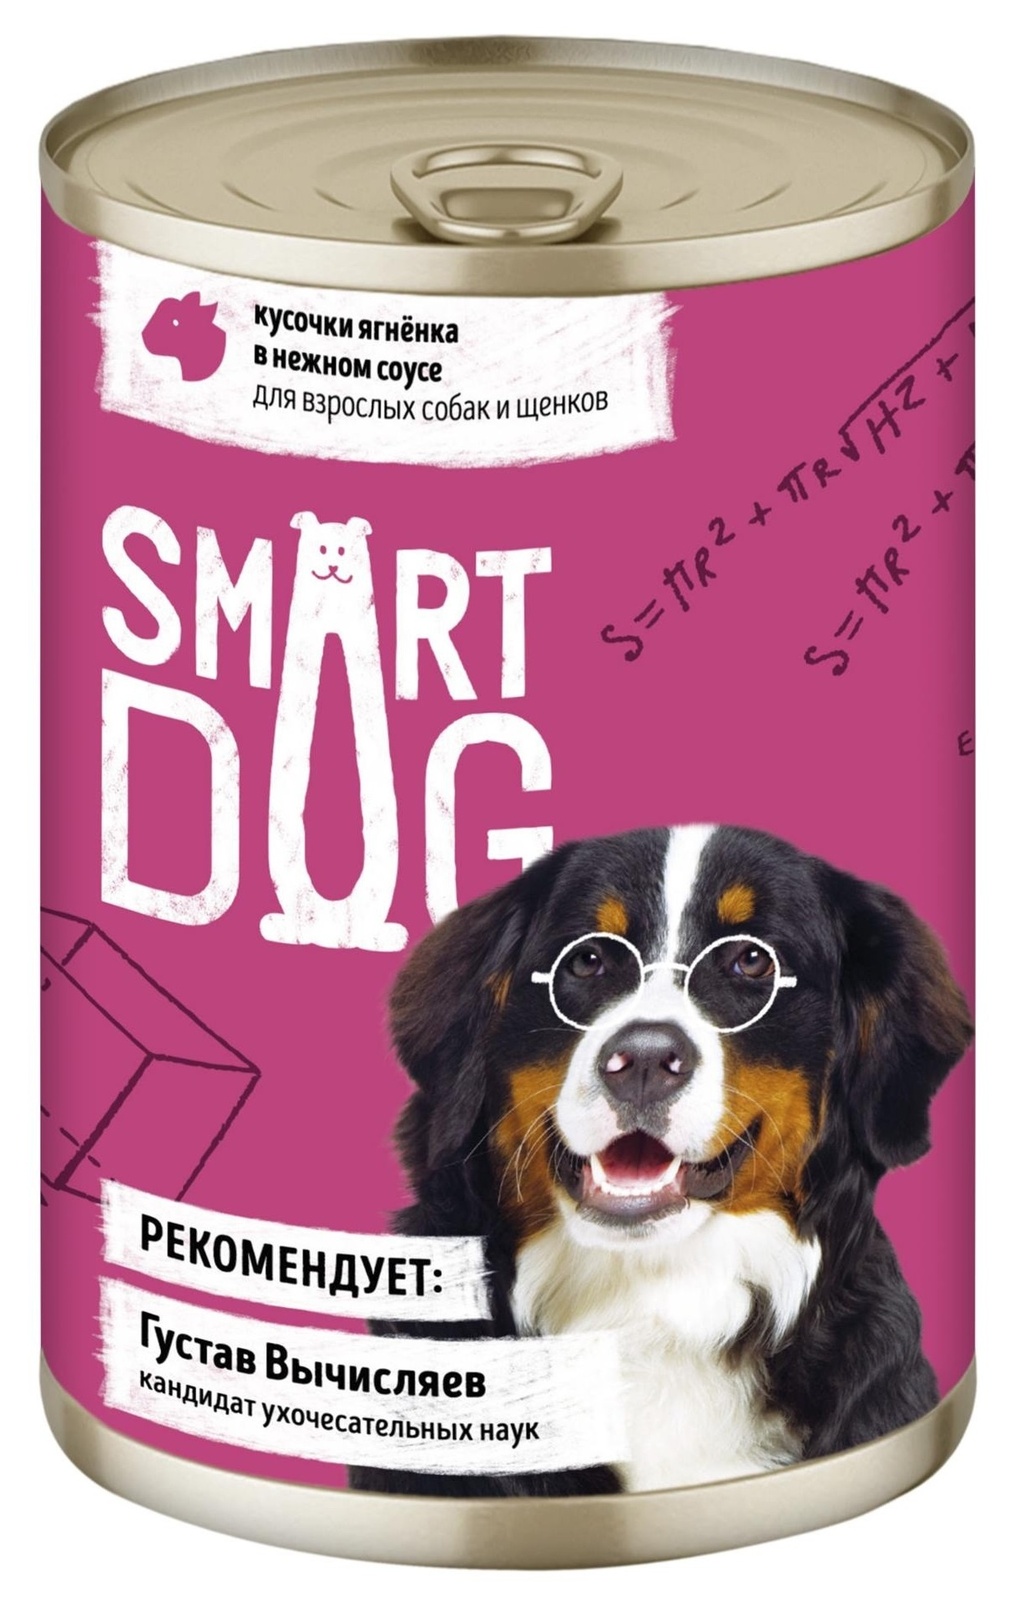 Smart Dog консервы Smart Dog консервы консервы для взрослых собак и щенков: кусочки ягненка в нежном соусе (850 г) avs 43736 43736